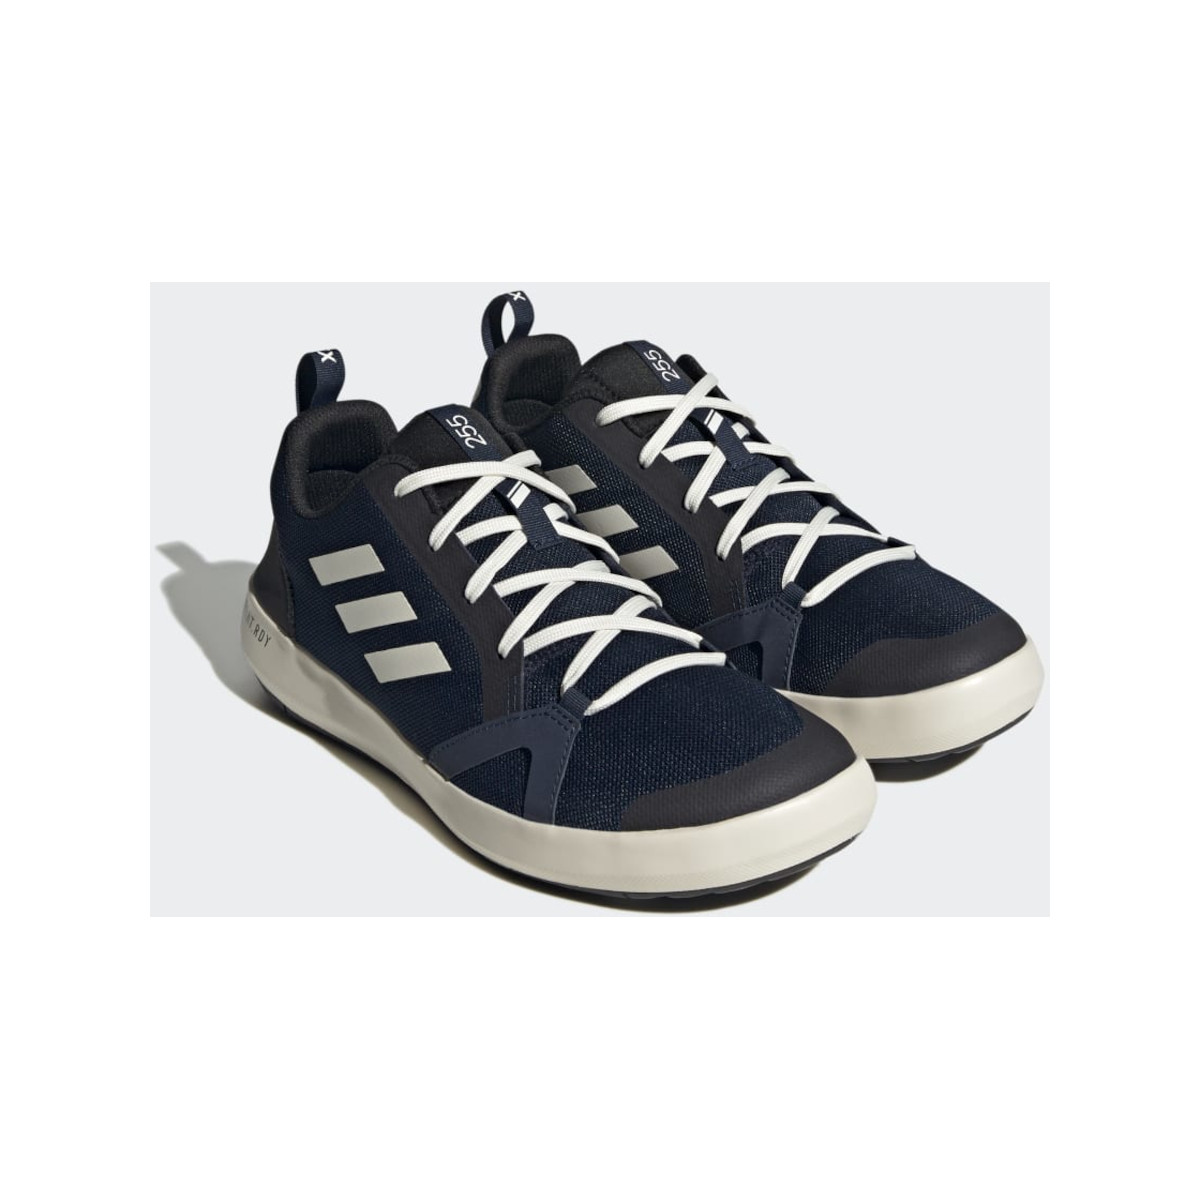 Adidas Boot Lace bootschoen heren marineblauw-wit, maat 44 2/3